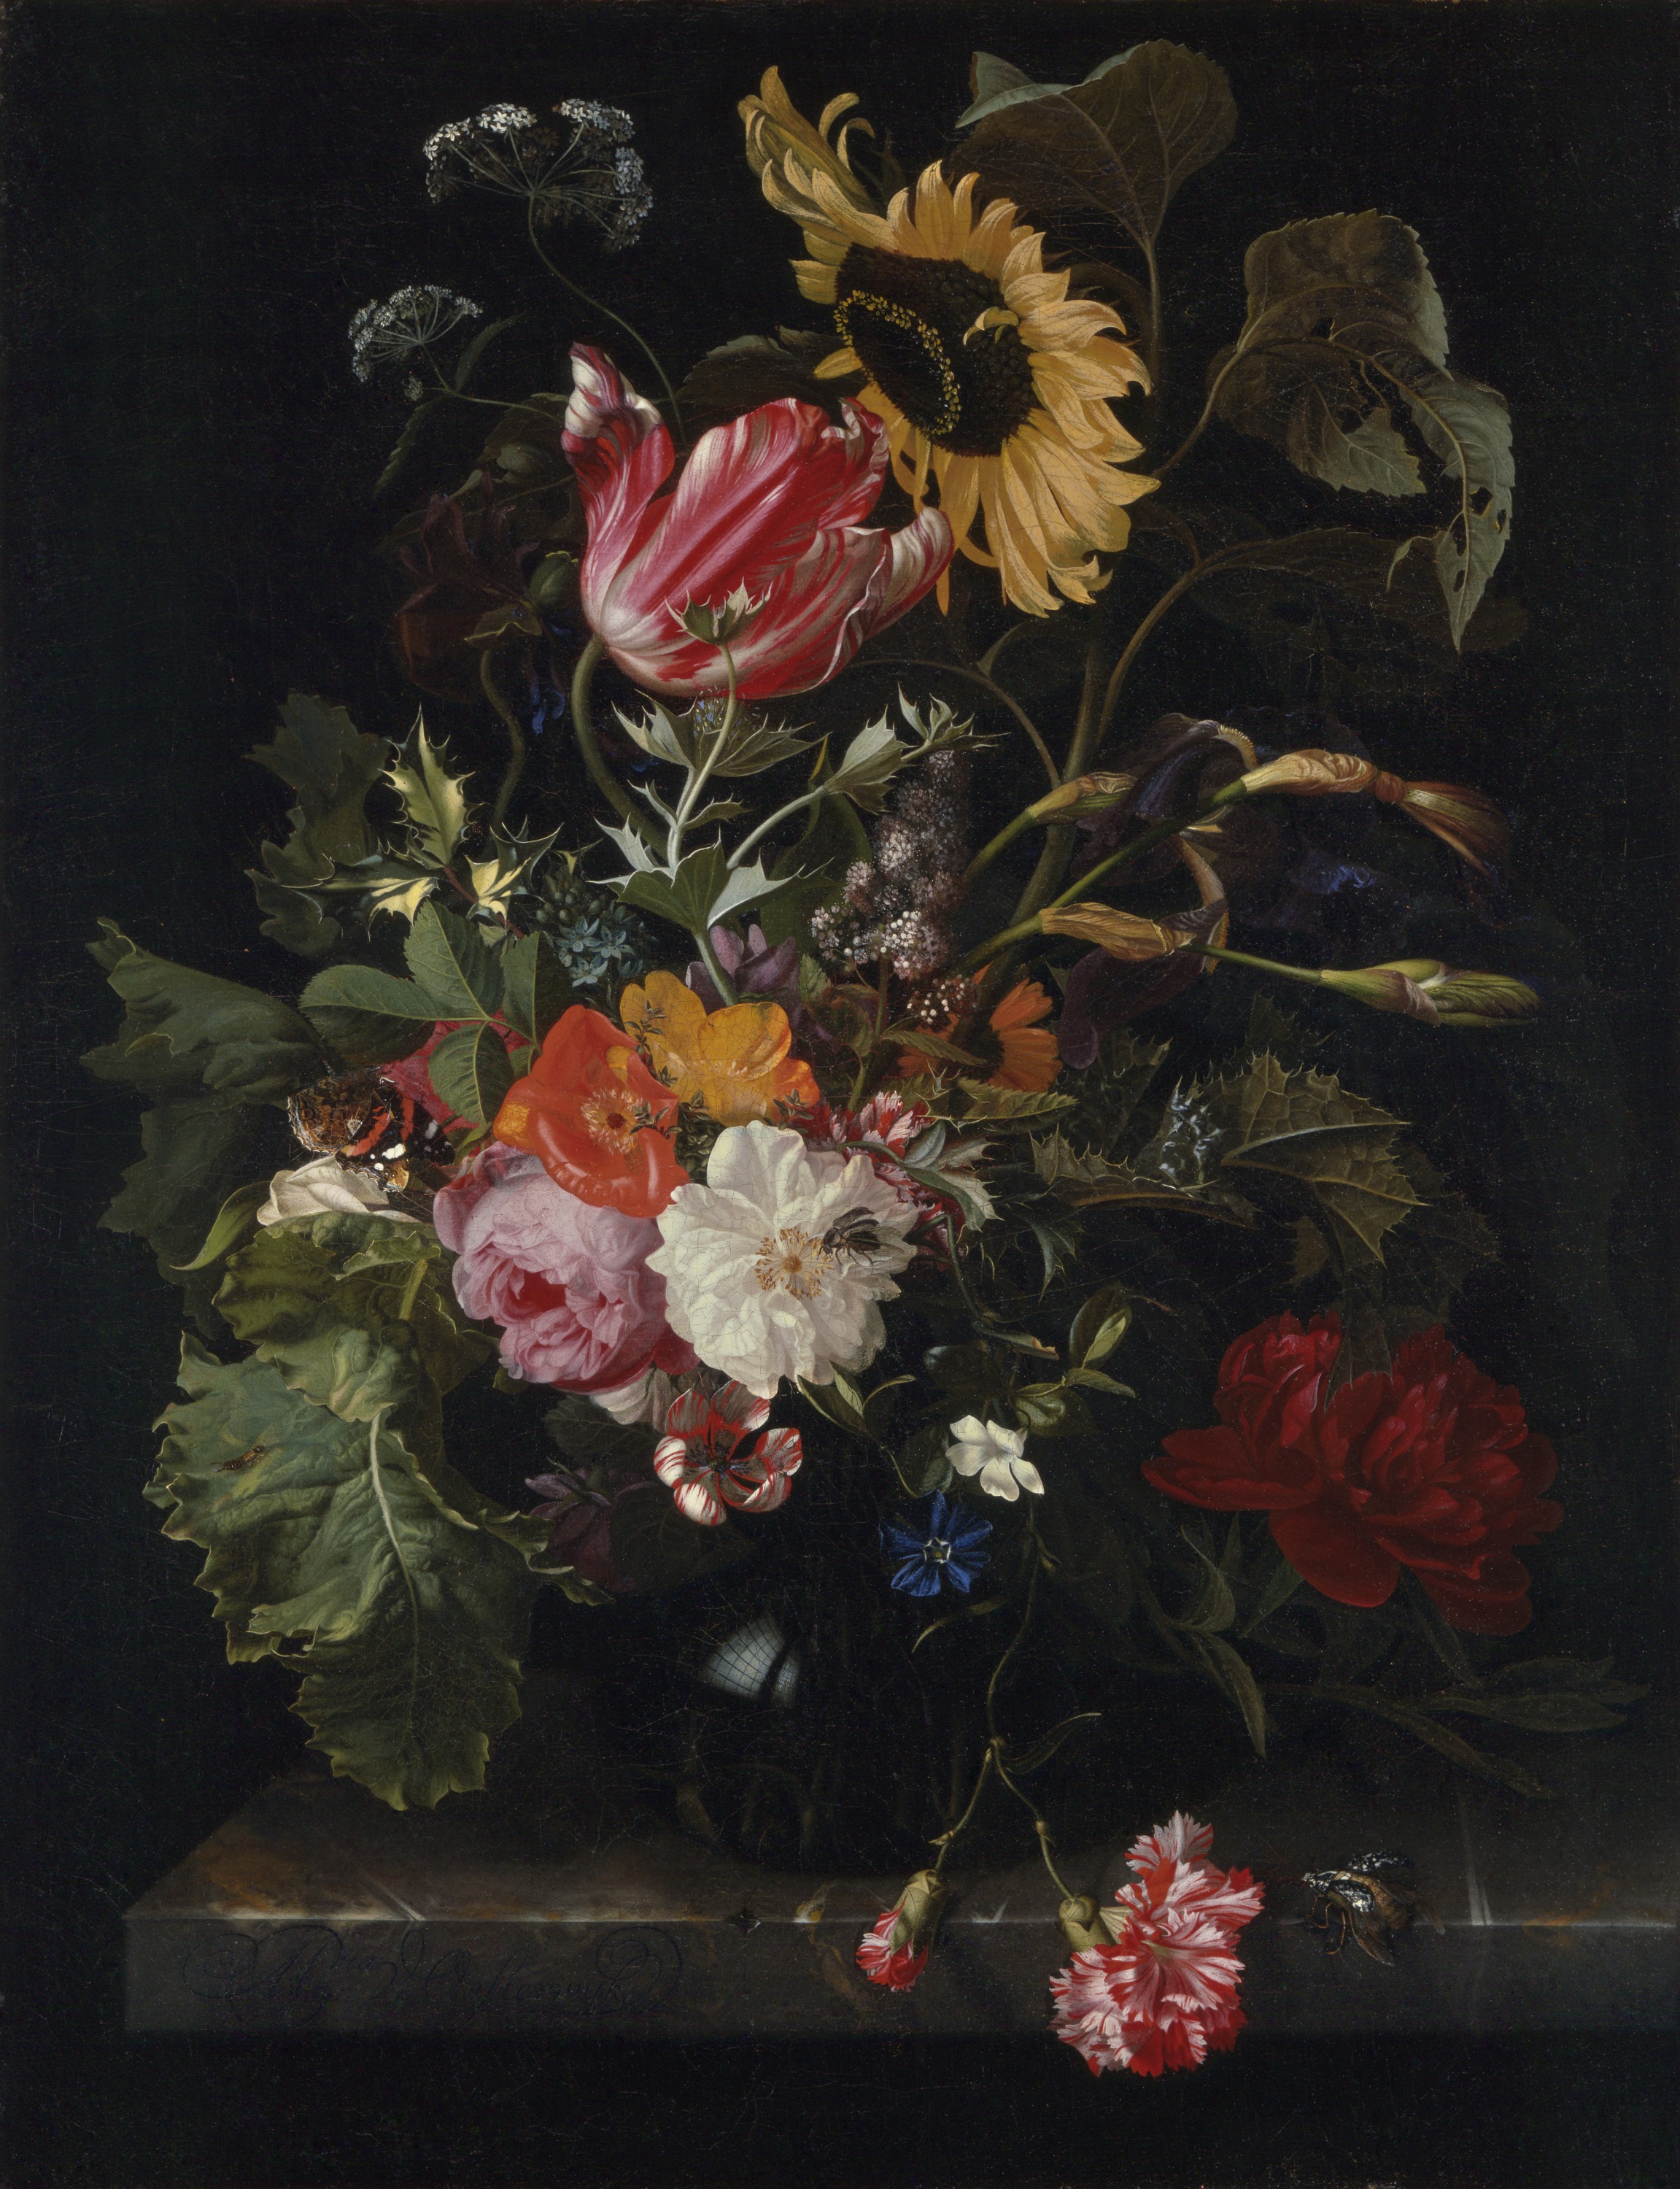 Blumenstrauß in einer Vase by Maria van Oosterwijck - circa 1670er - 74 × 56 cm Denver Art Museum